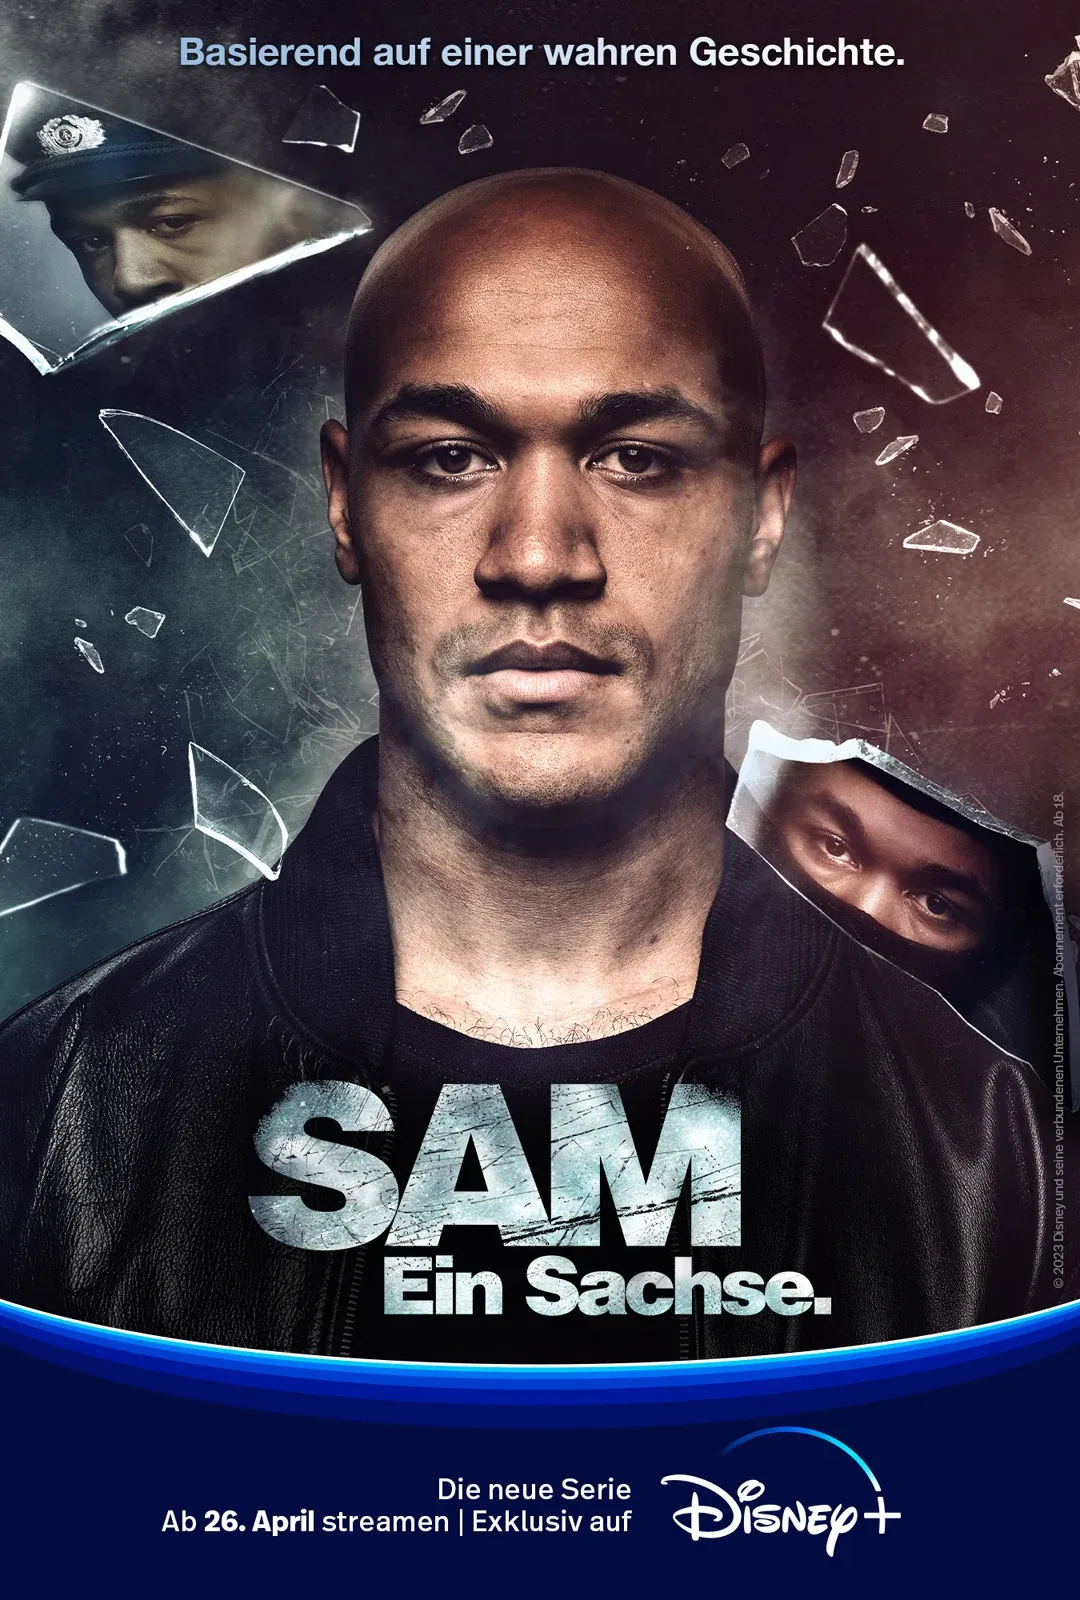 Sachse Saxon (Mini-series, épisodes) racisme Allemagne l’Est